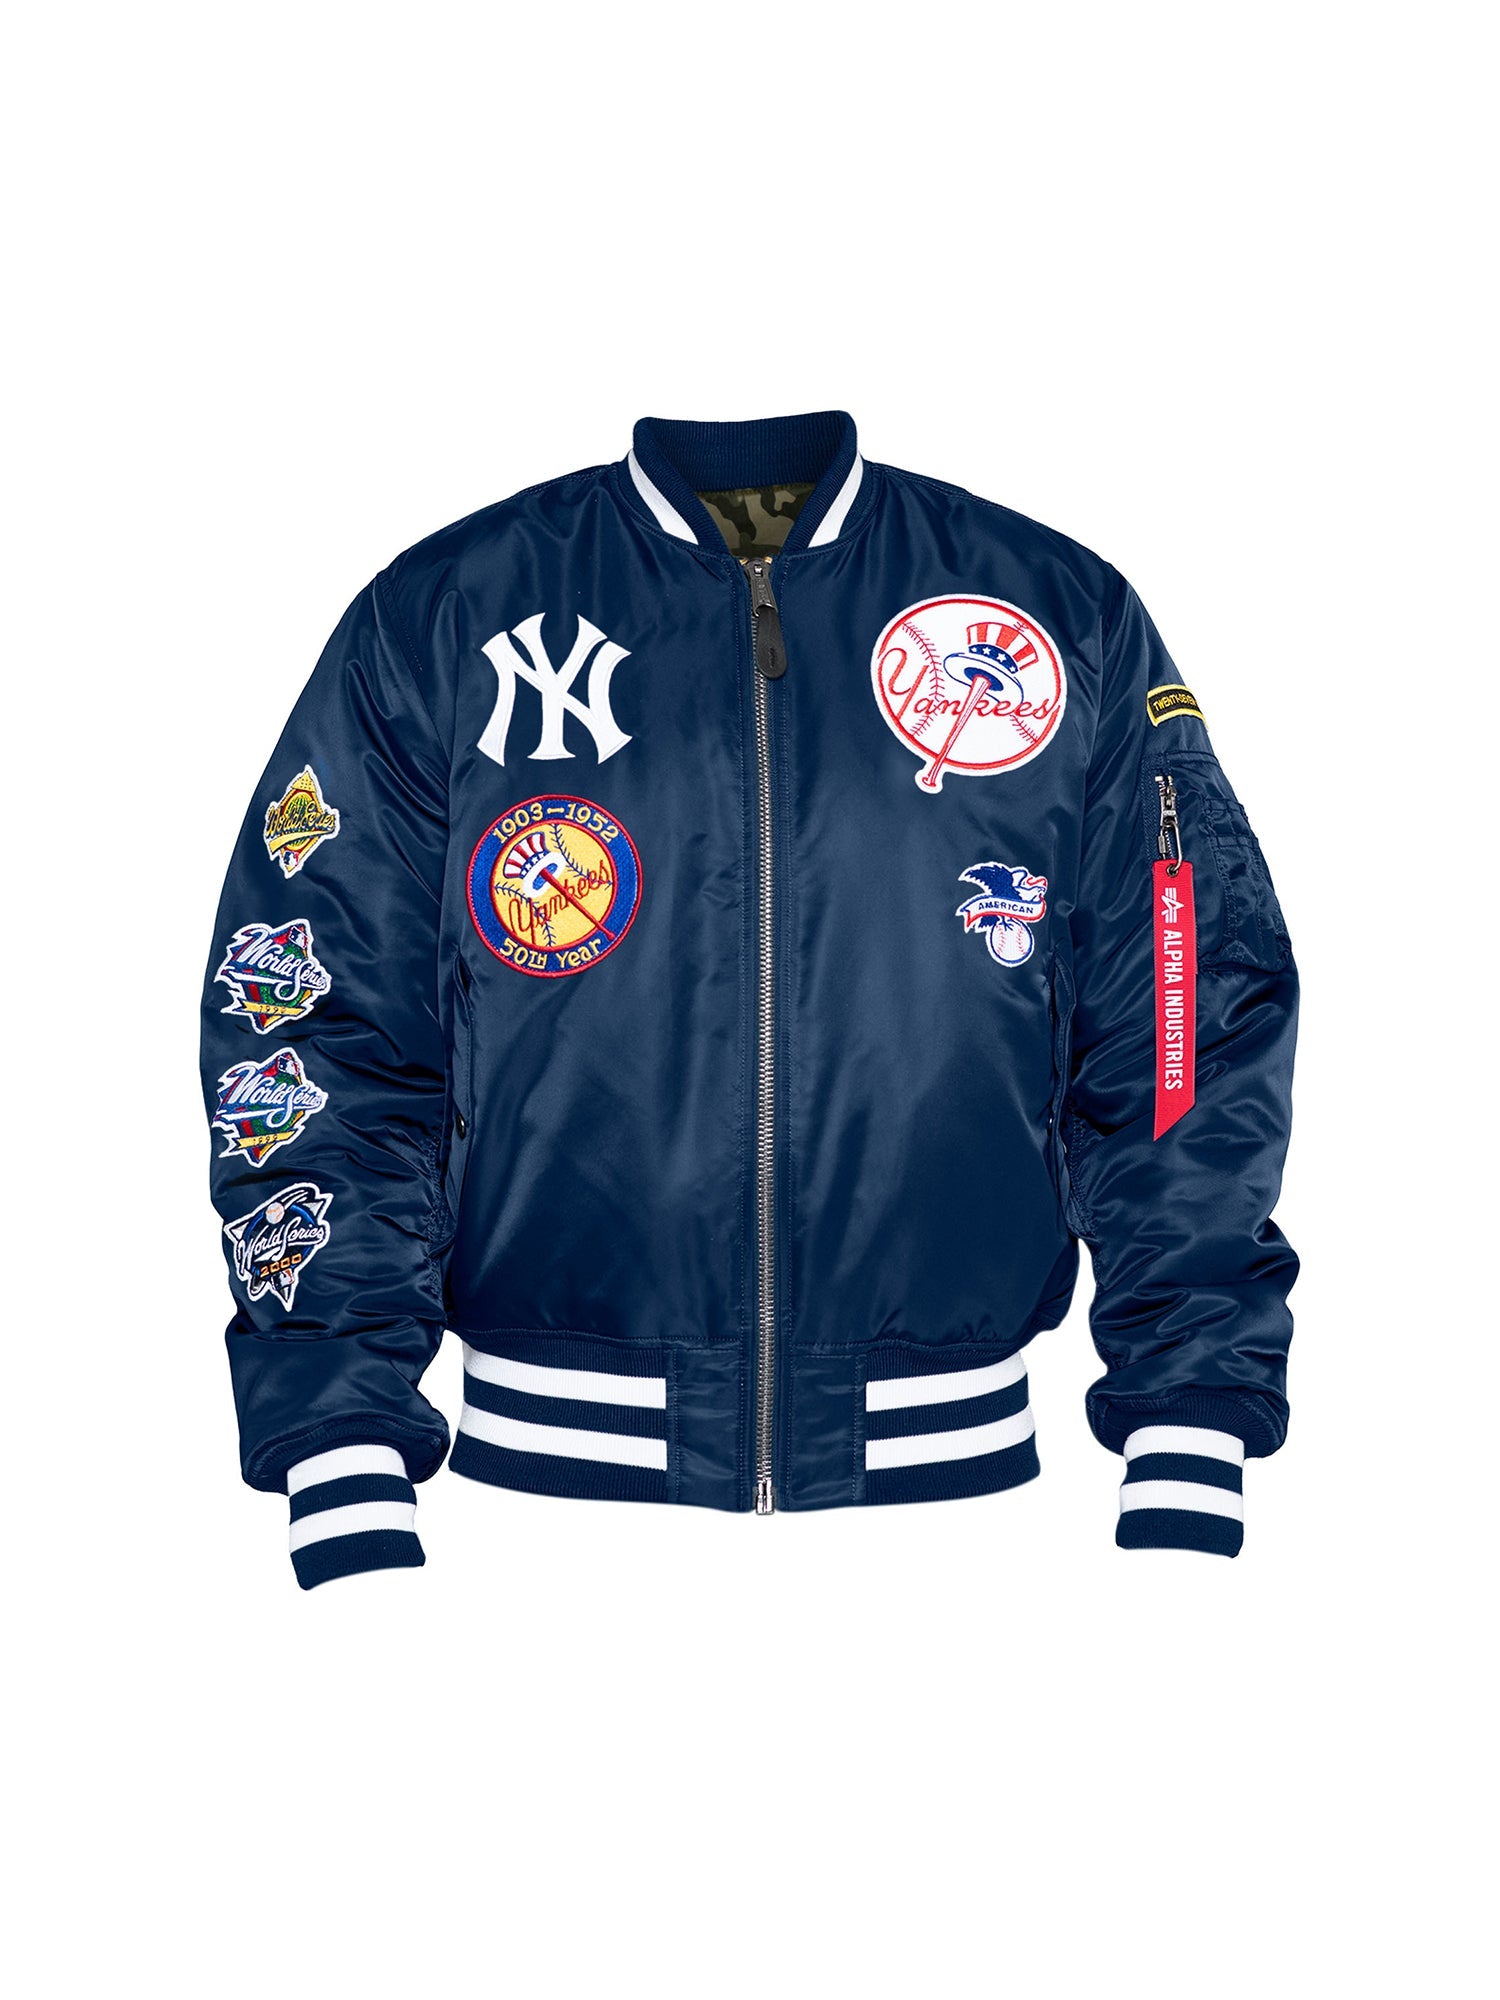 New York Yankees MA-1 Bomber Jacket, MLB© x Alpha x New Era